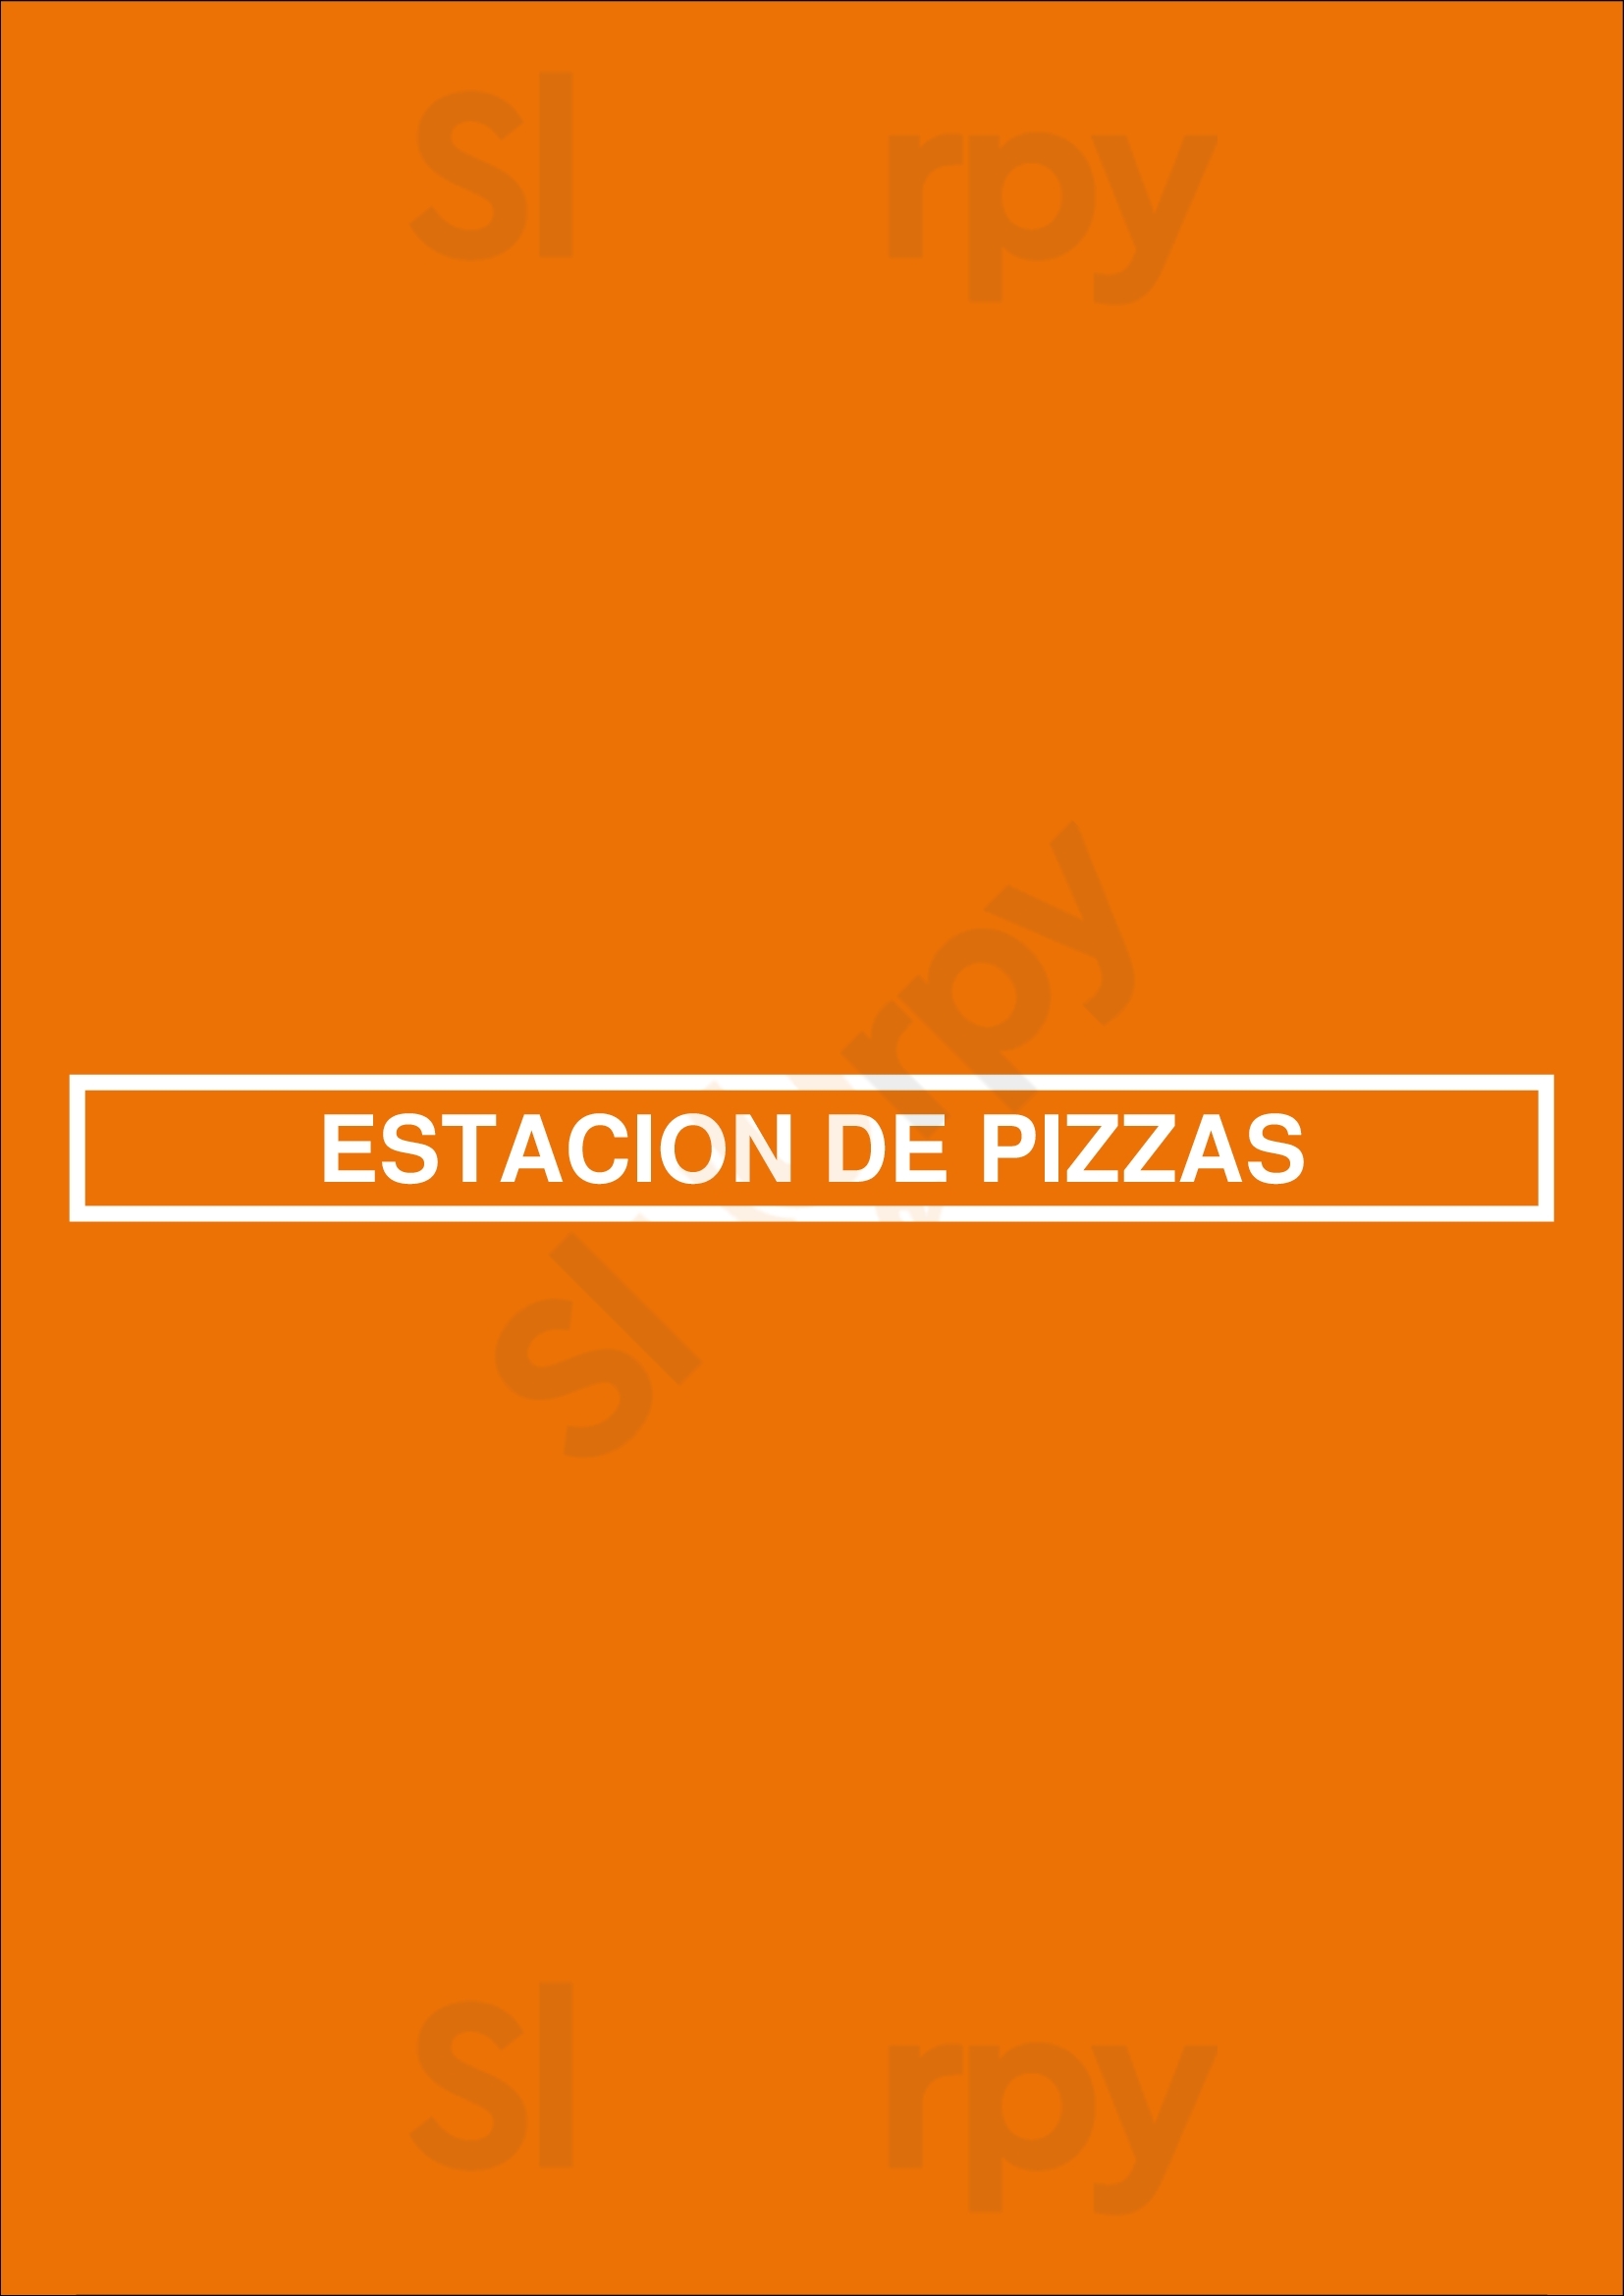 Estacion De Pizzas - Edp San Miguel Menu - 1